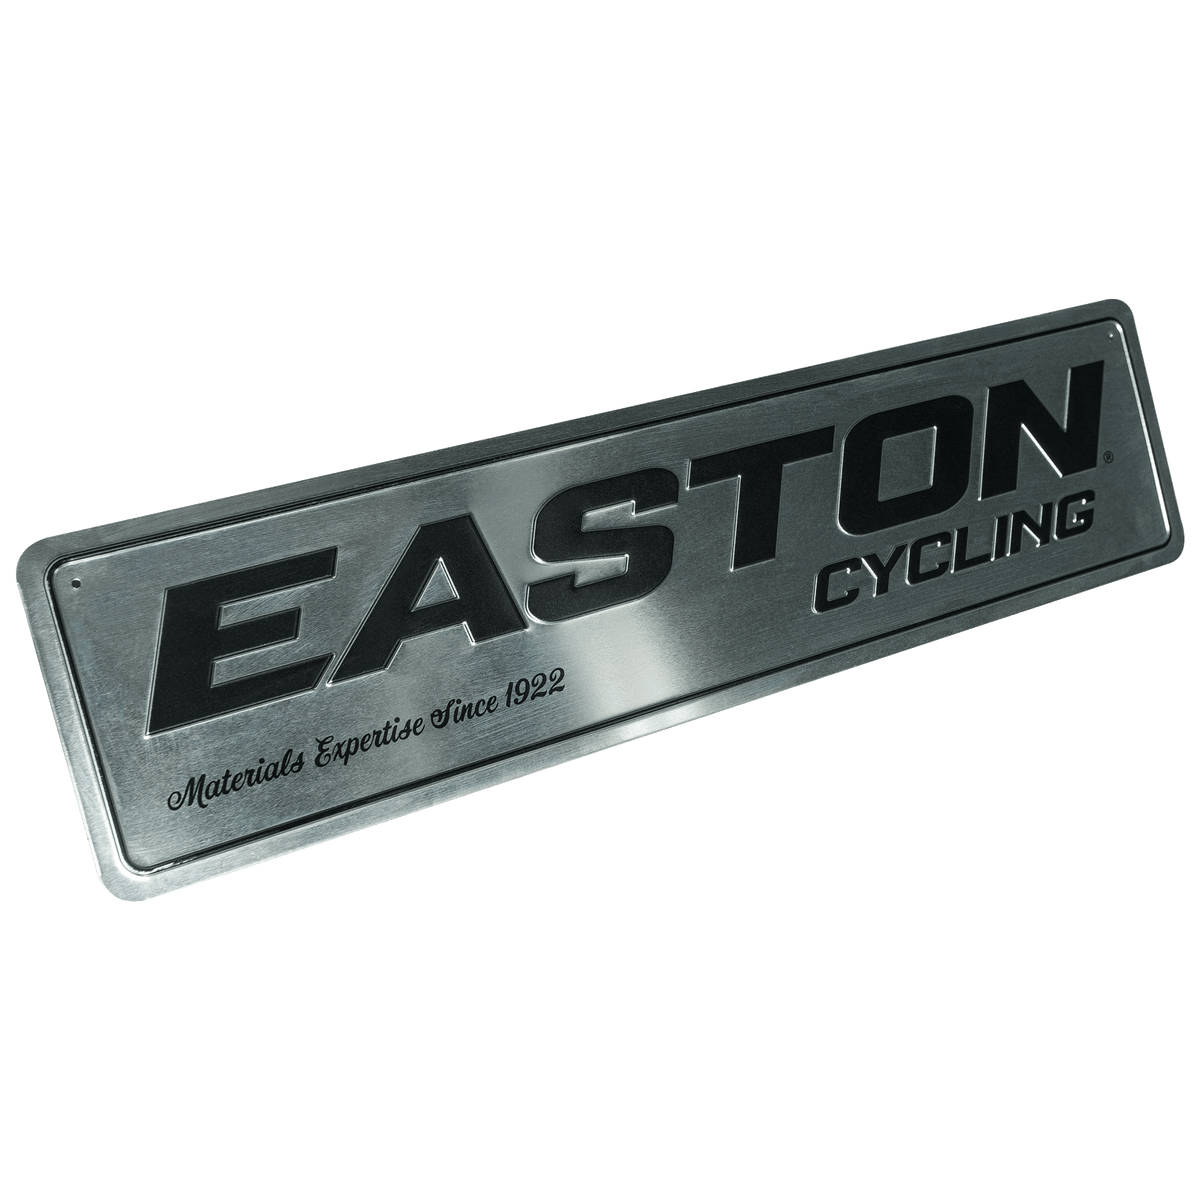 easton logo png